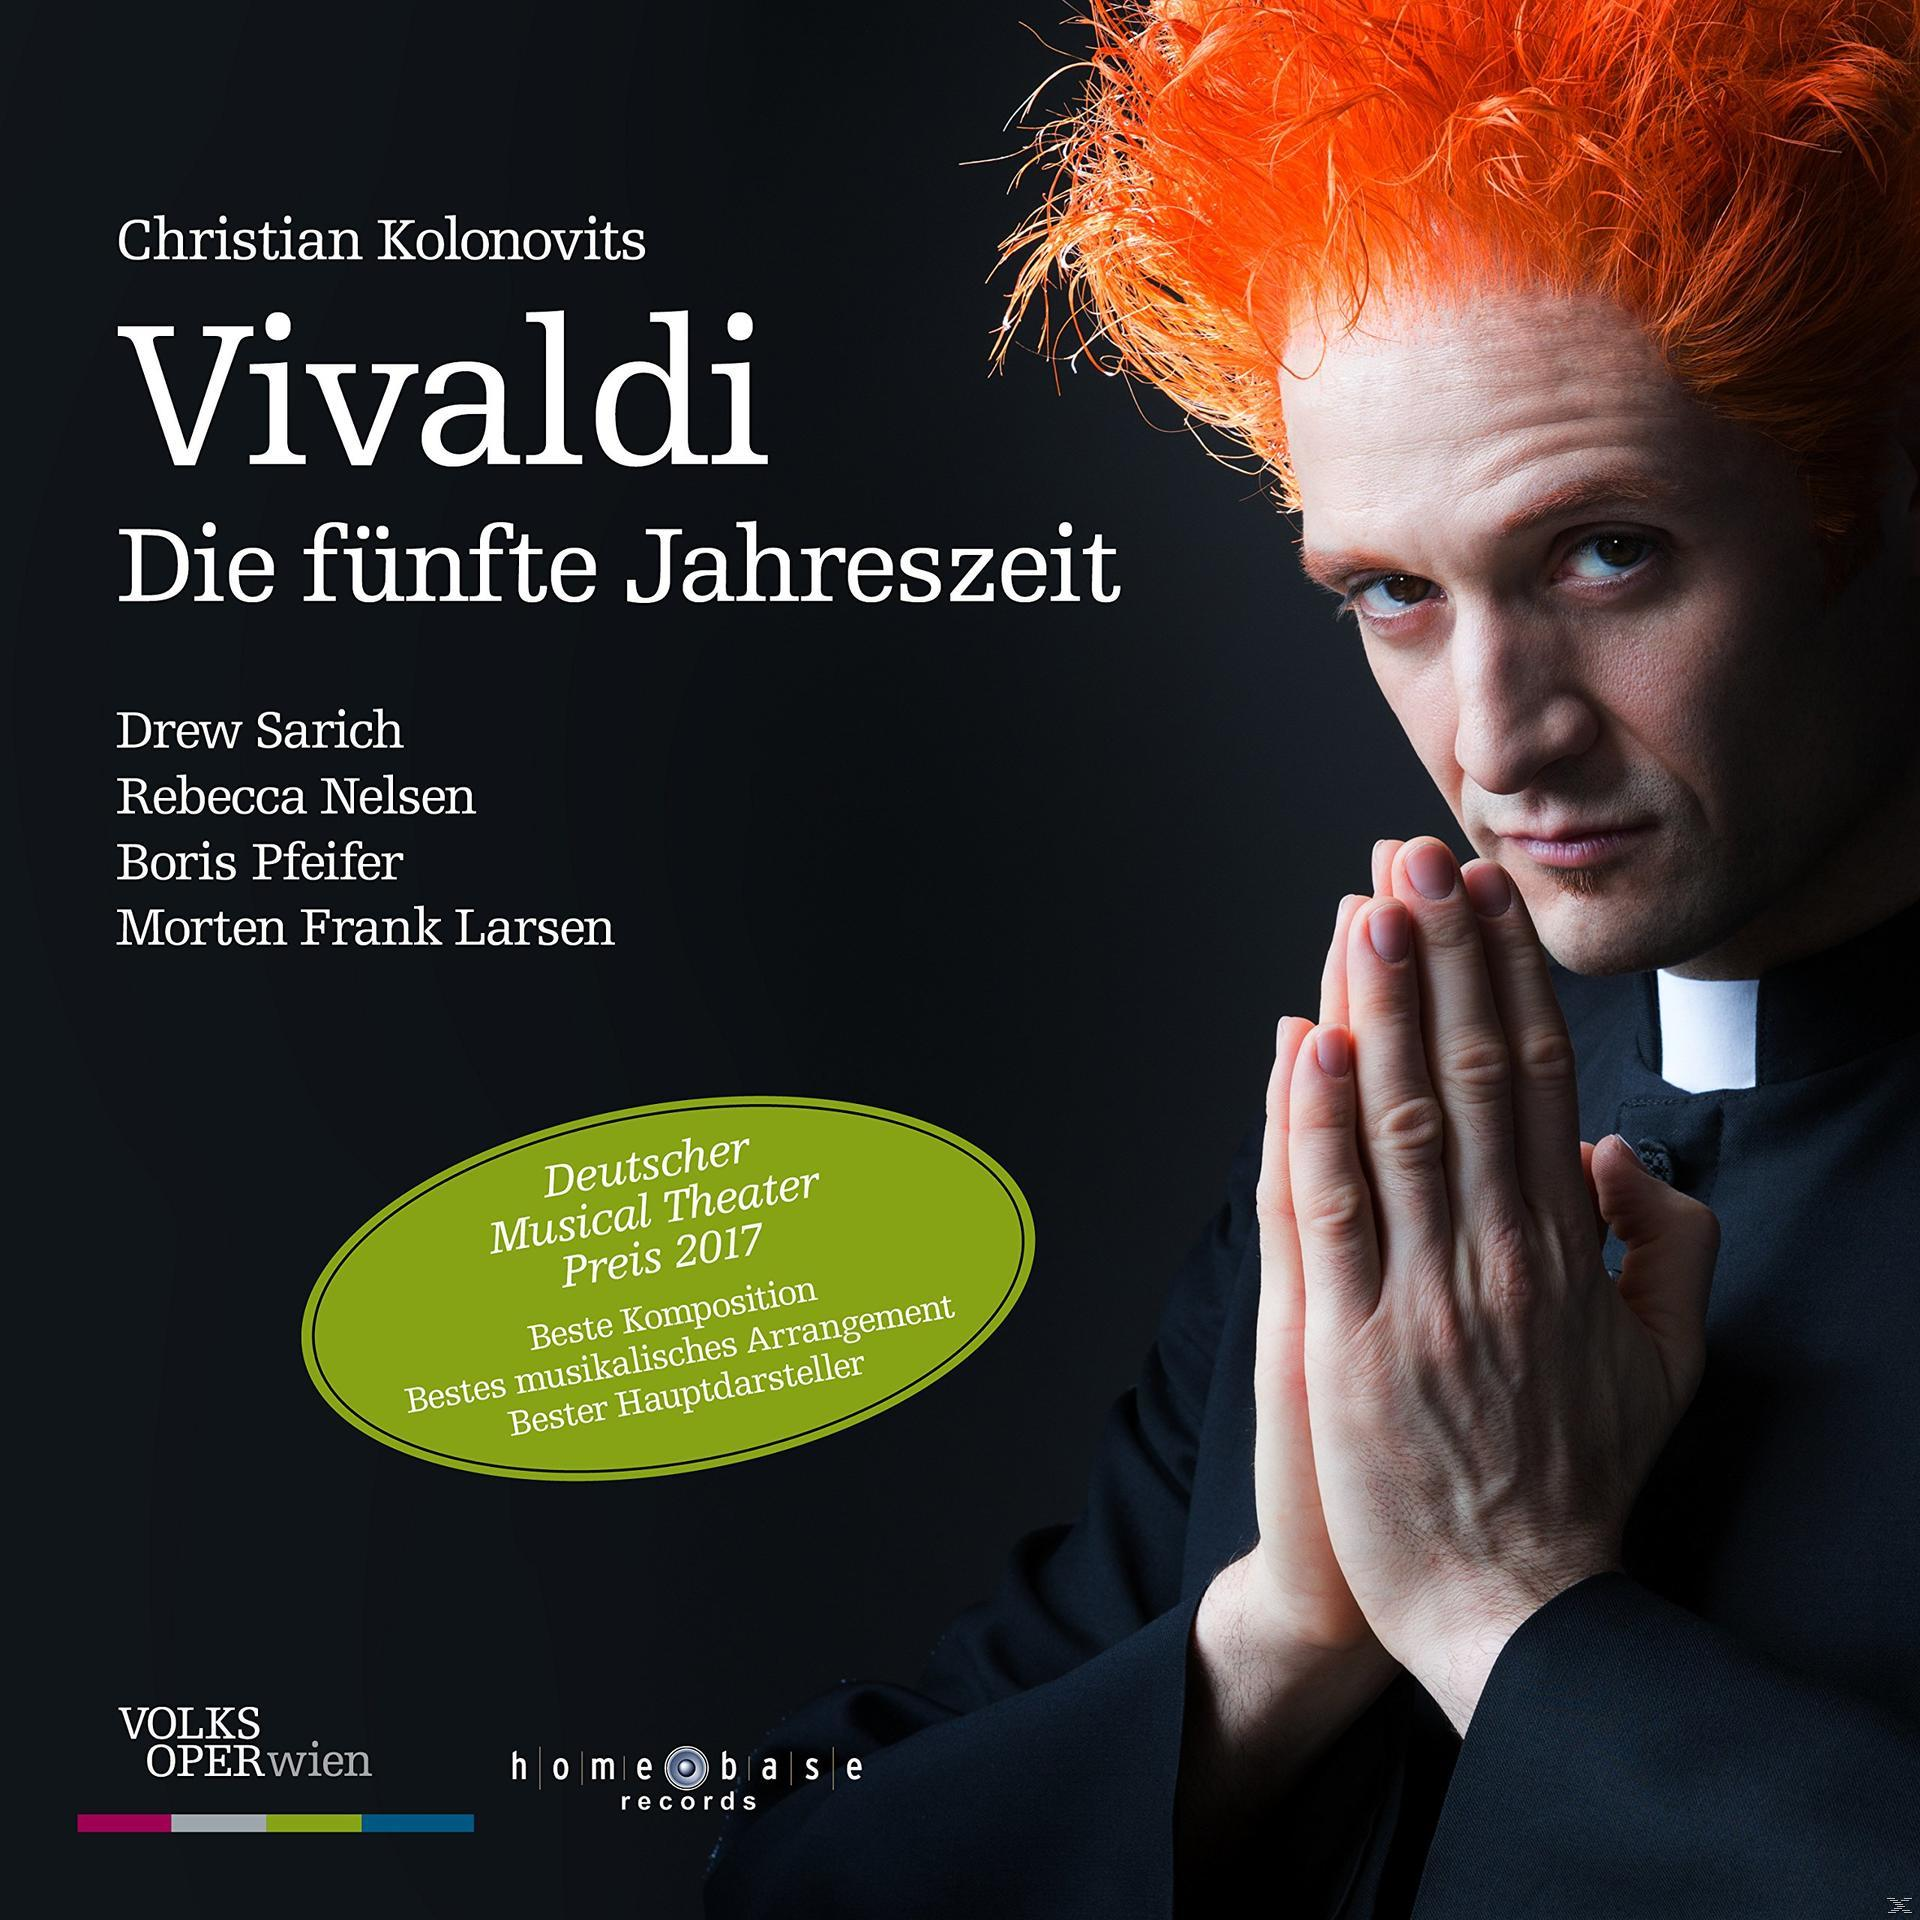 VARIOUS - Vivaldi - (CD) Die Jahreszeit fünfte 